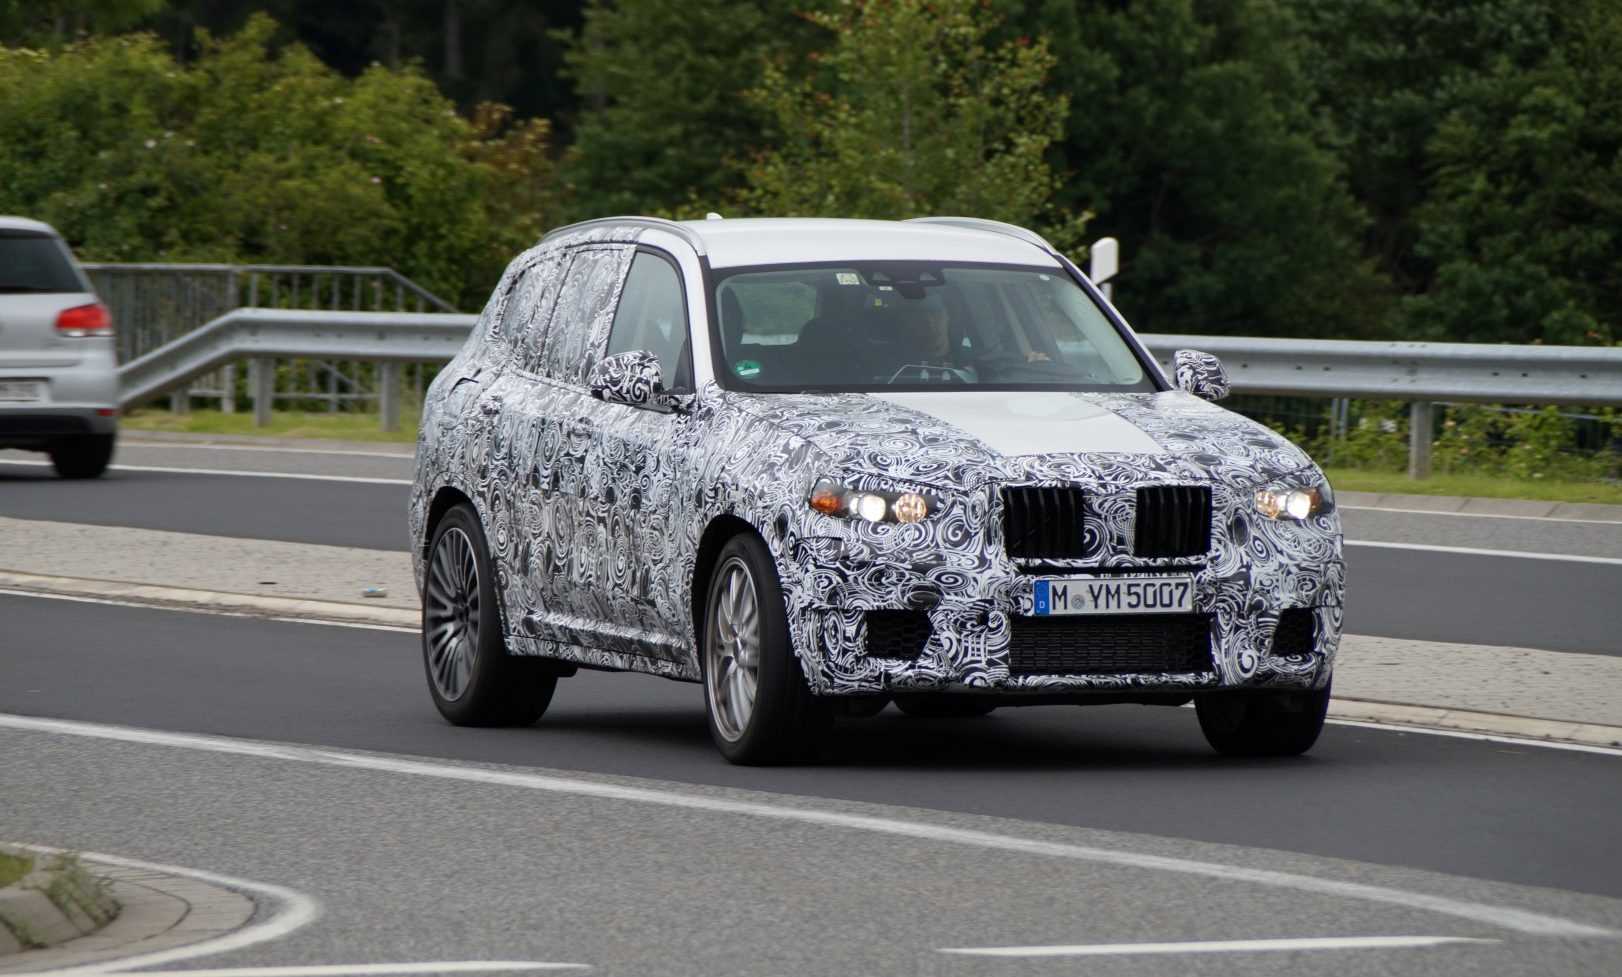 BMW X3 M 2017